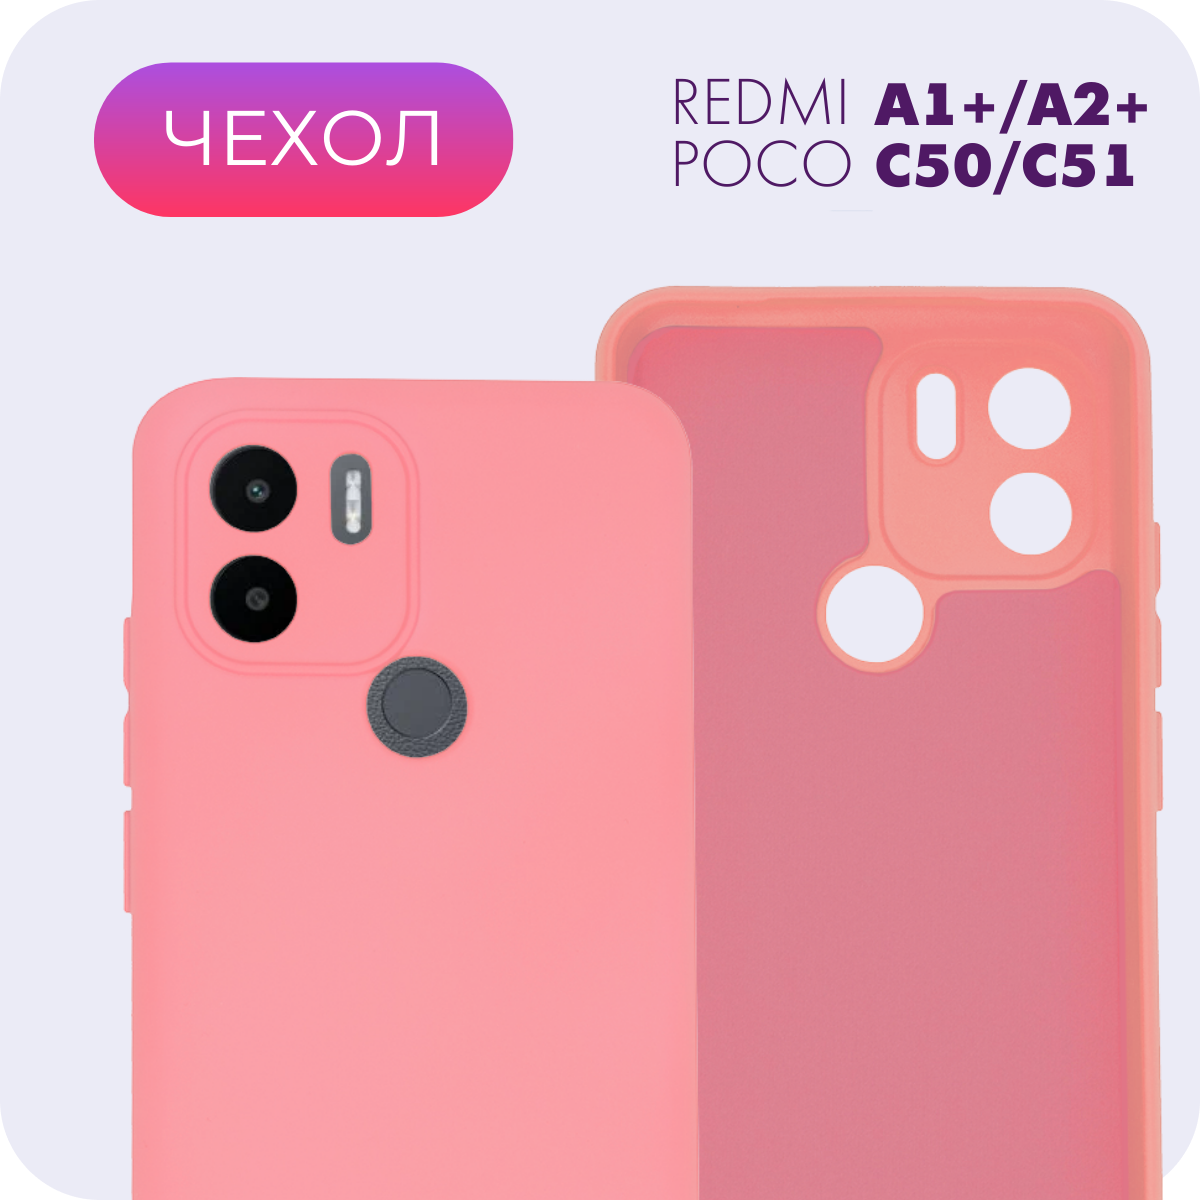 Противоударный матовый чехол с защитой камеры №13 Silicone Case для Xiaomi Redmi A1+ / A2+ / Poco C50 / C51 (Ксиоми Редми А1+/А2+/Поко Ц50/Ц51)